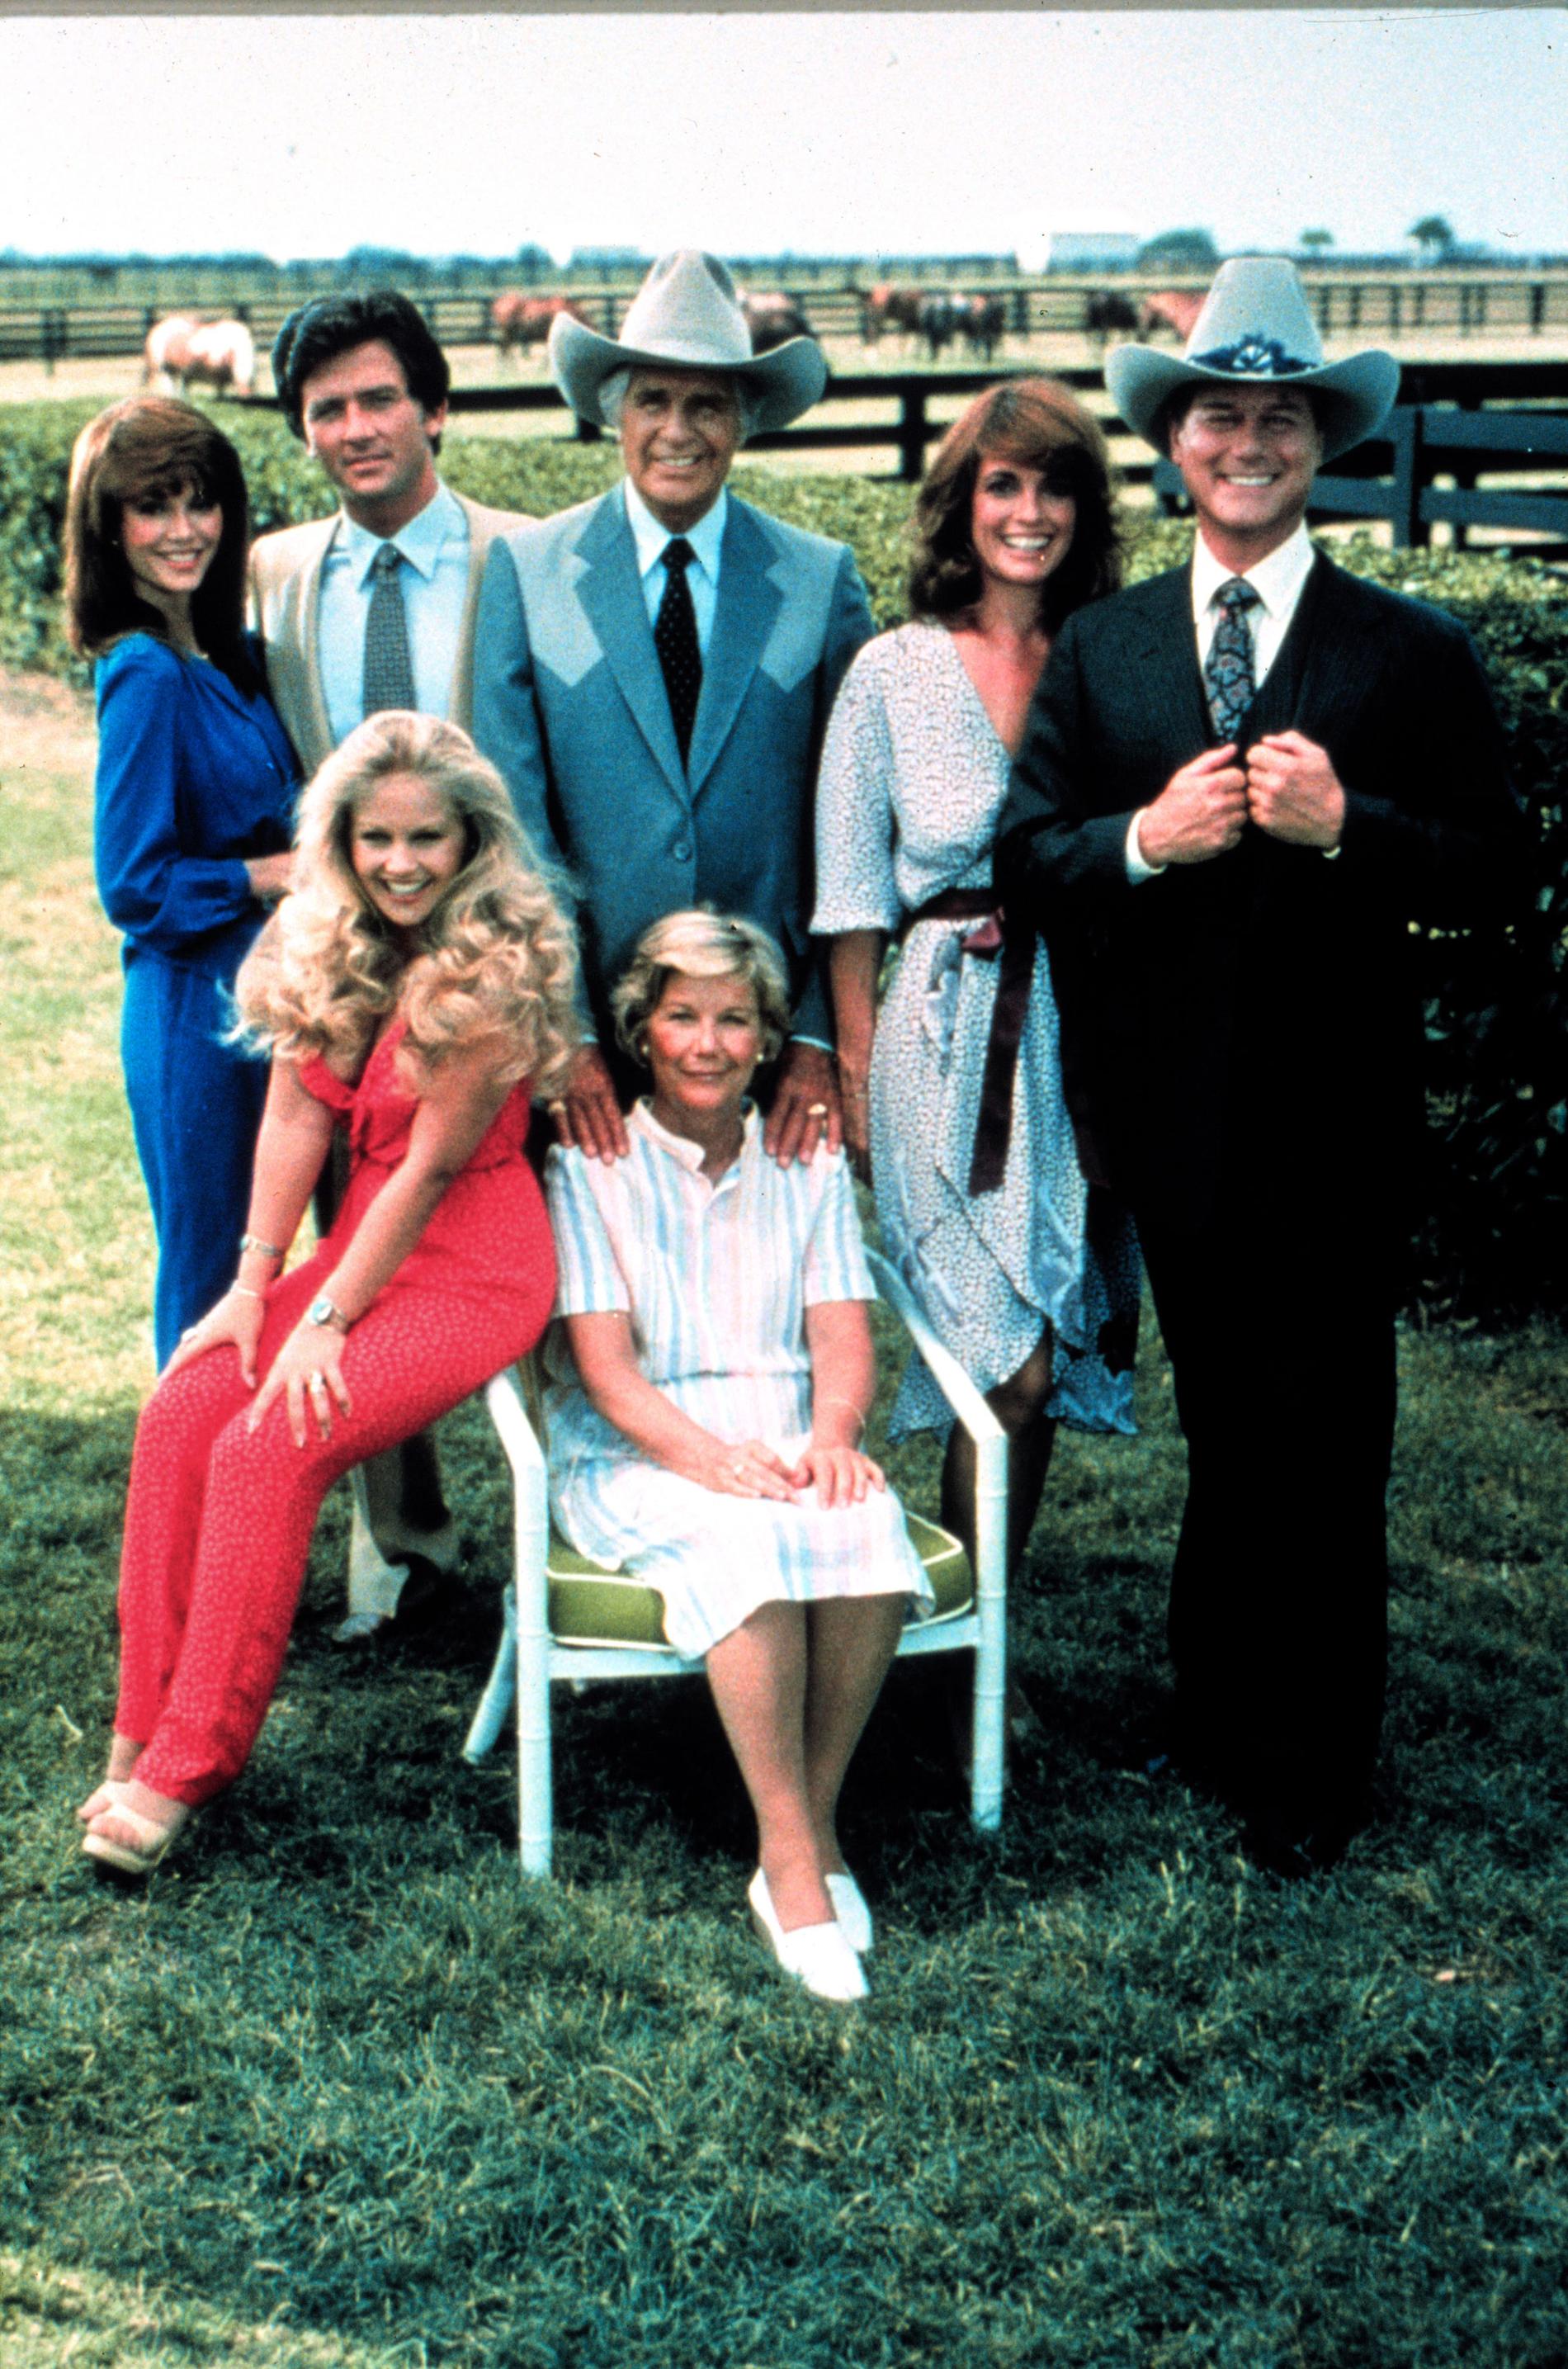 Den ursprungliga versionen av tv-såpan ”Dallas” visades i Sverige åren 1981-1993, totalt 357 avsnitt.